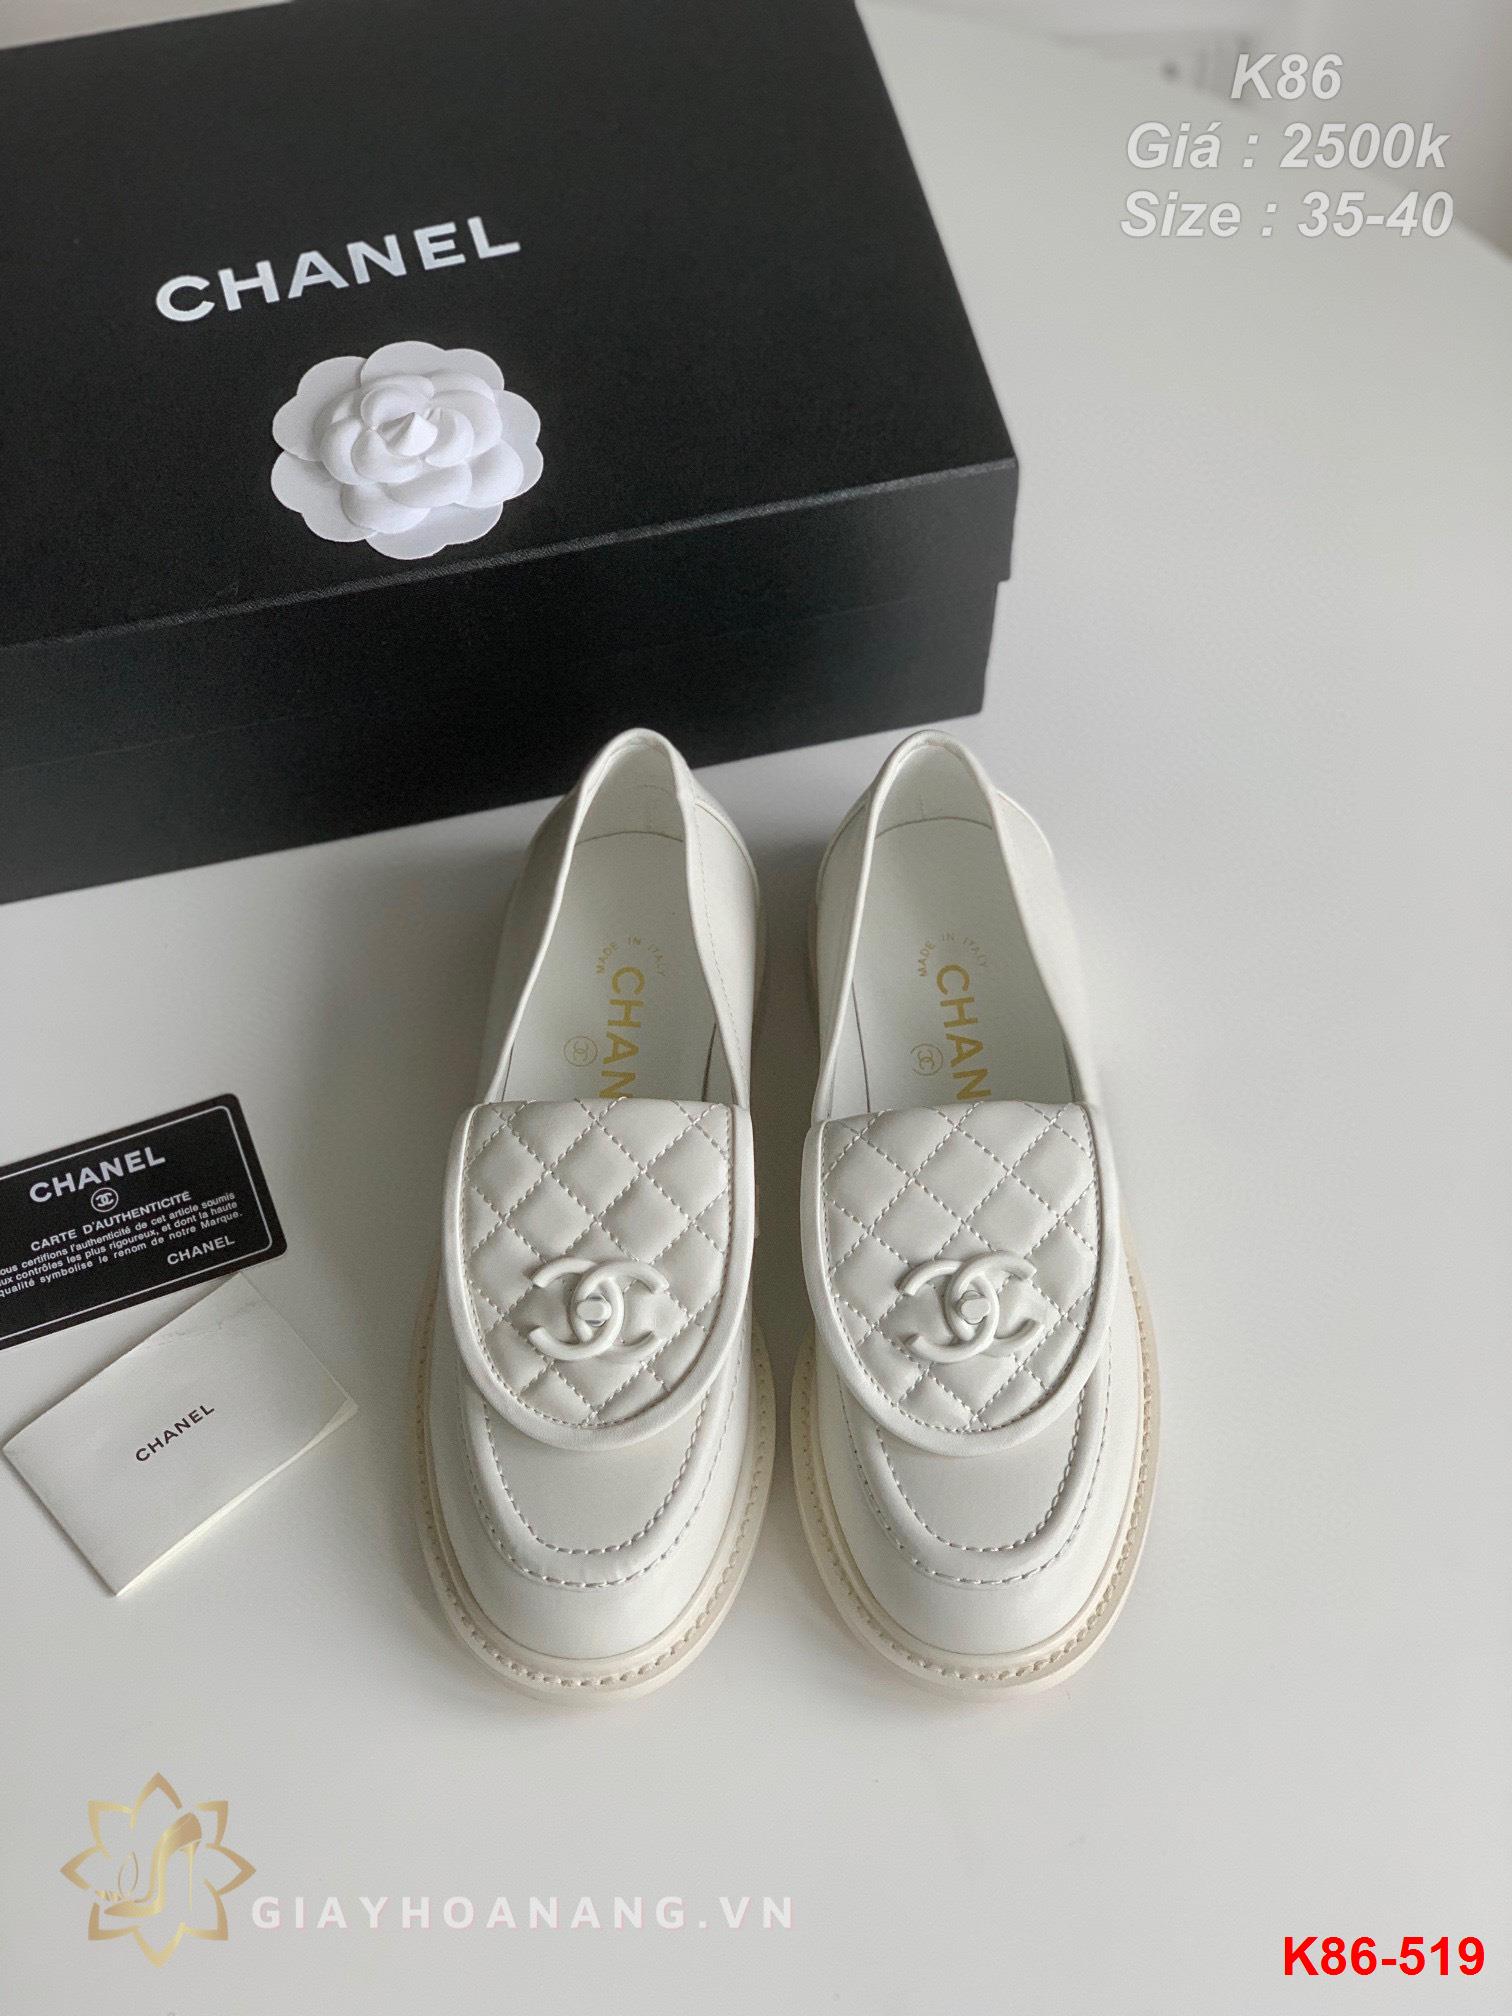 K86-519 Chanel giày lười siêu cấp